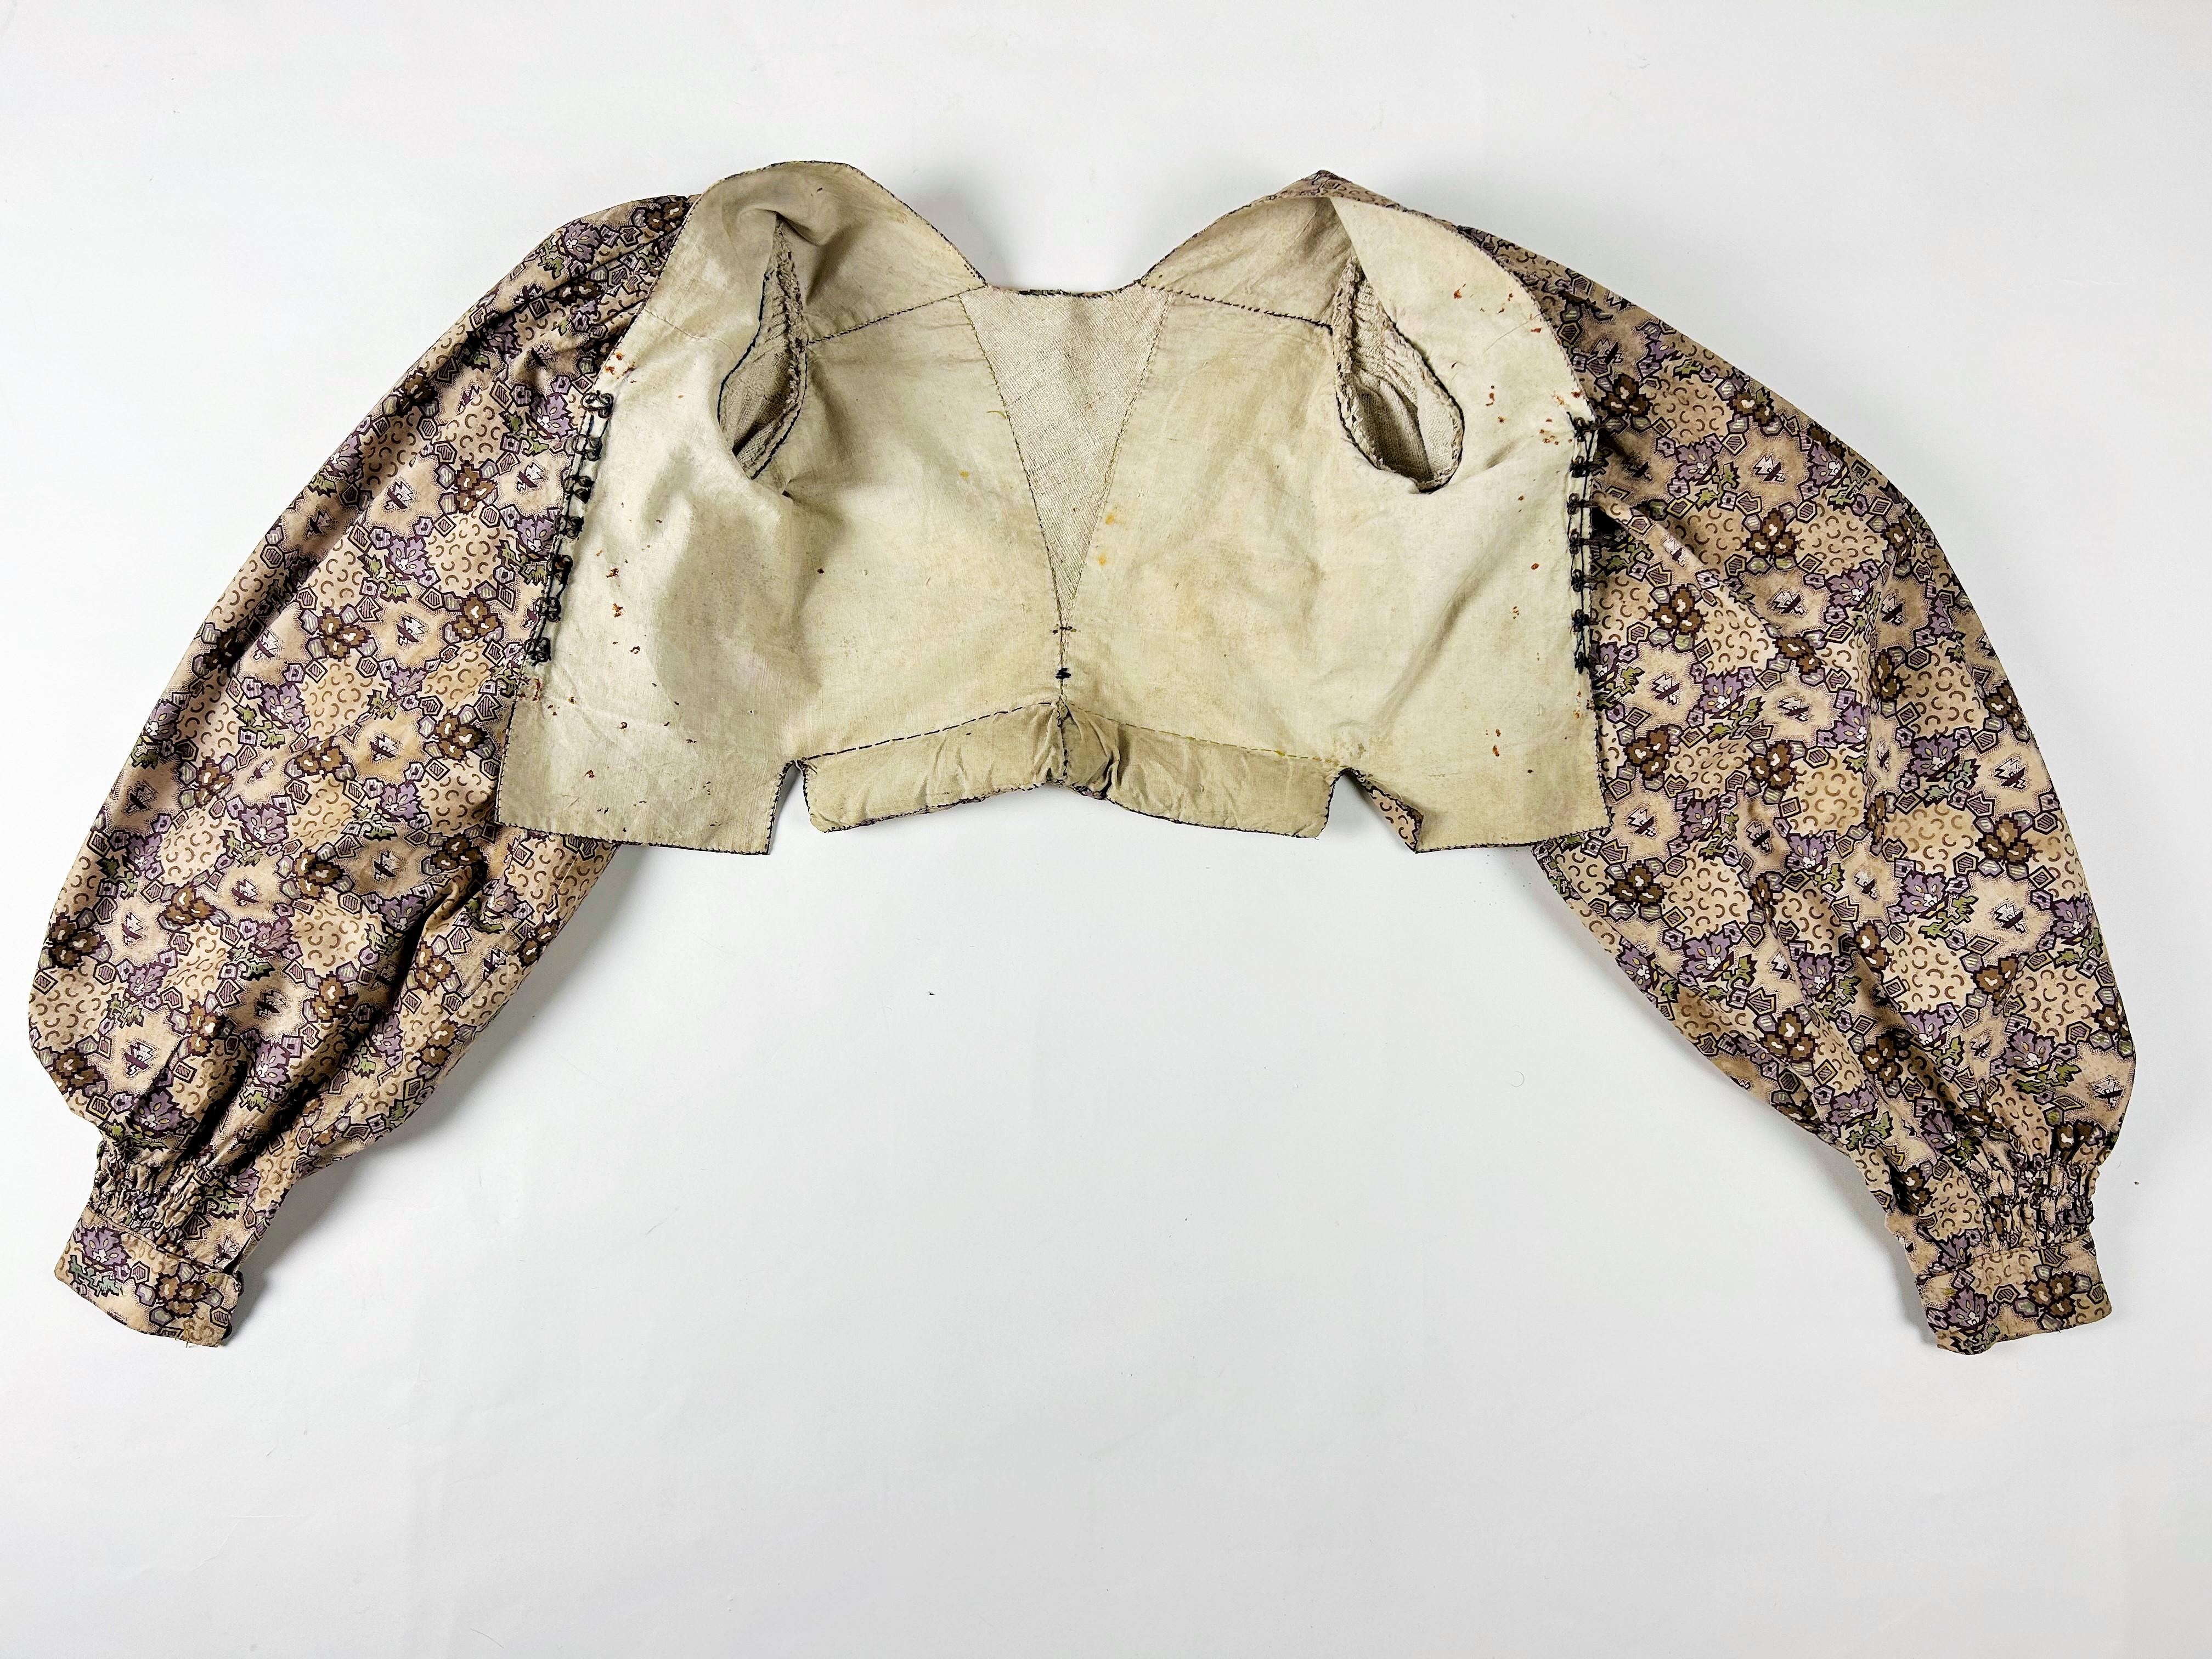 Circa 1830
France ou Provence

Étonnante camisole en lin écru et indien avec un perlage intéressant et des liens permettant de positionner la jupe dans le dos et datant de la période romantique. Influence évidente de la mode parisienne pour ce